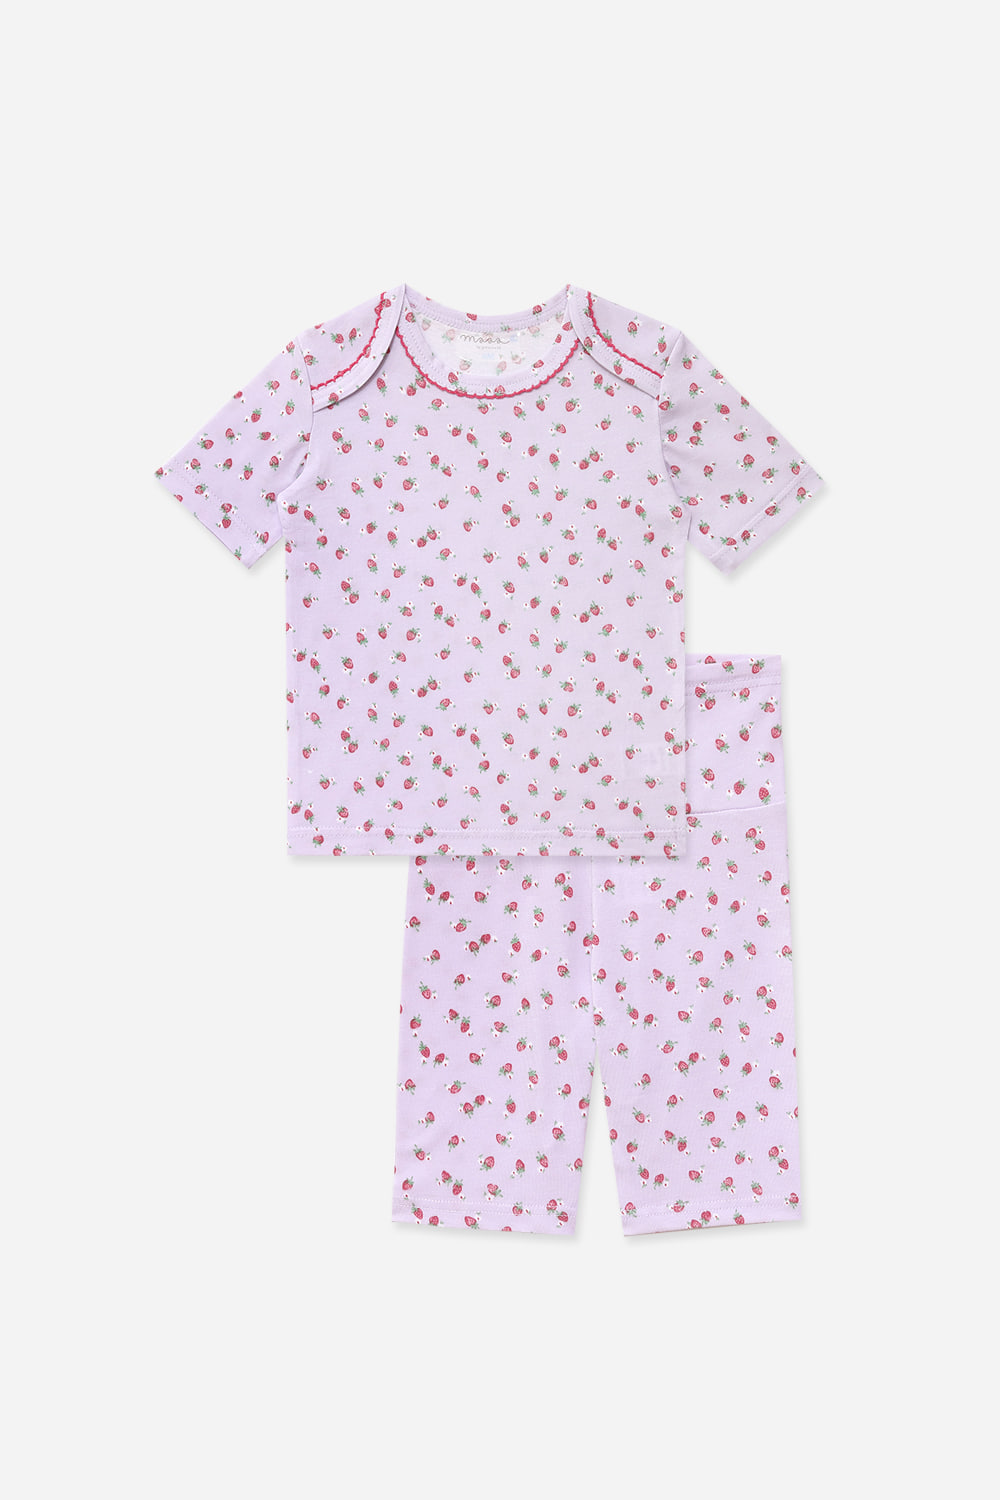 보라딸기 베이비-5부잠옷, 홈웨어, 아동내복, 아동속옷,성인잠옷,고후나비